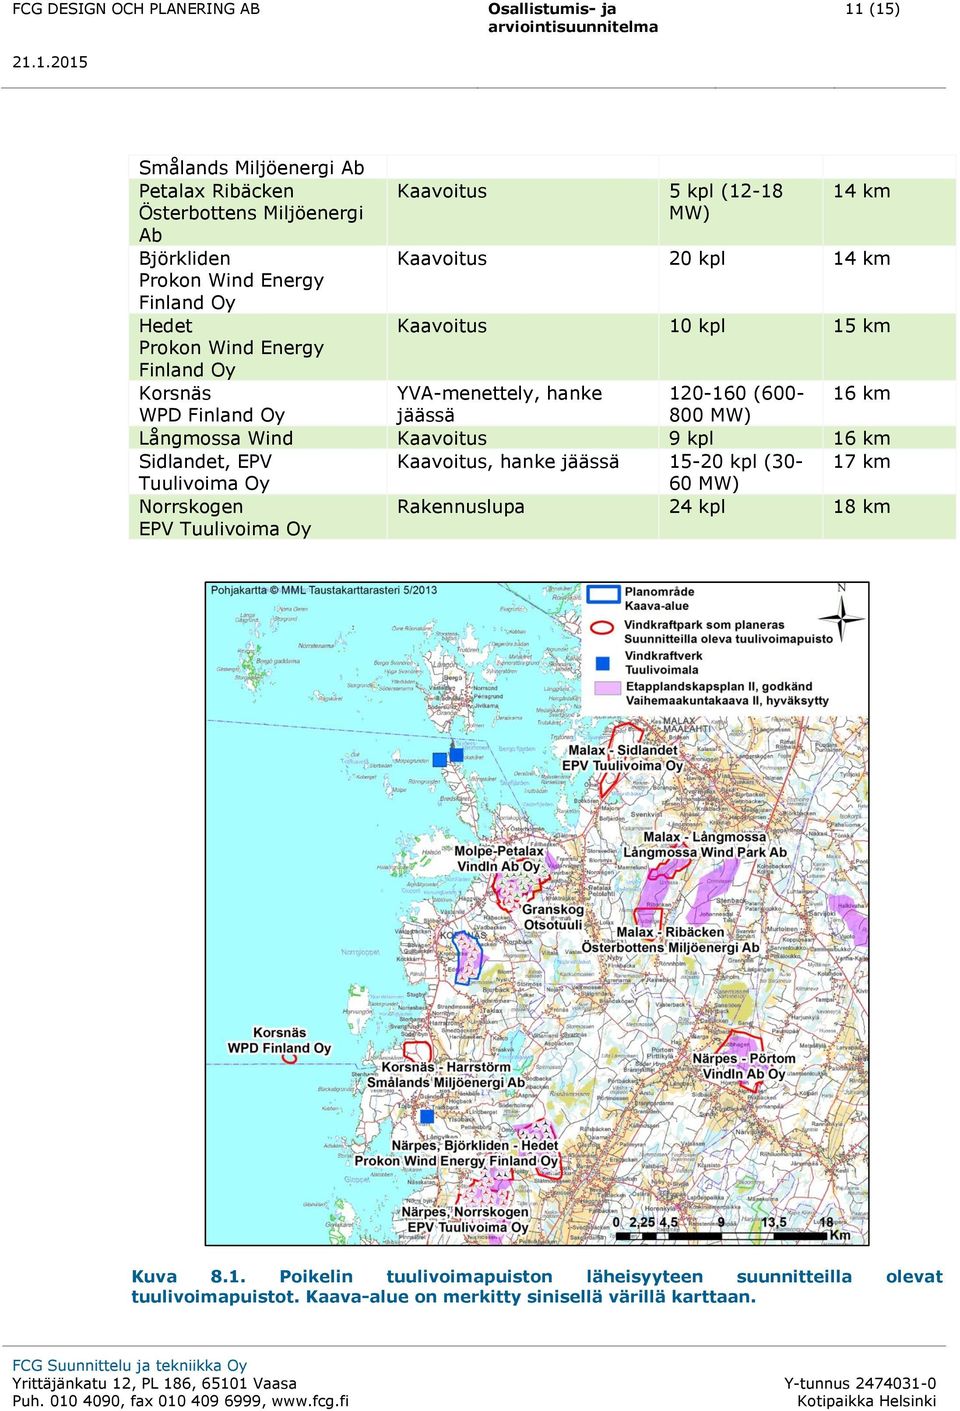 MW) Långmossa Wind Kaavoitus 9 kpl 16 km Sidlandet, EPV Kaavoitus, hanke jäässä 15-20 kpl (30-17 km Tuulivoima Oy 60 MW) Norrskogen EPV Tuulivoima Oy